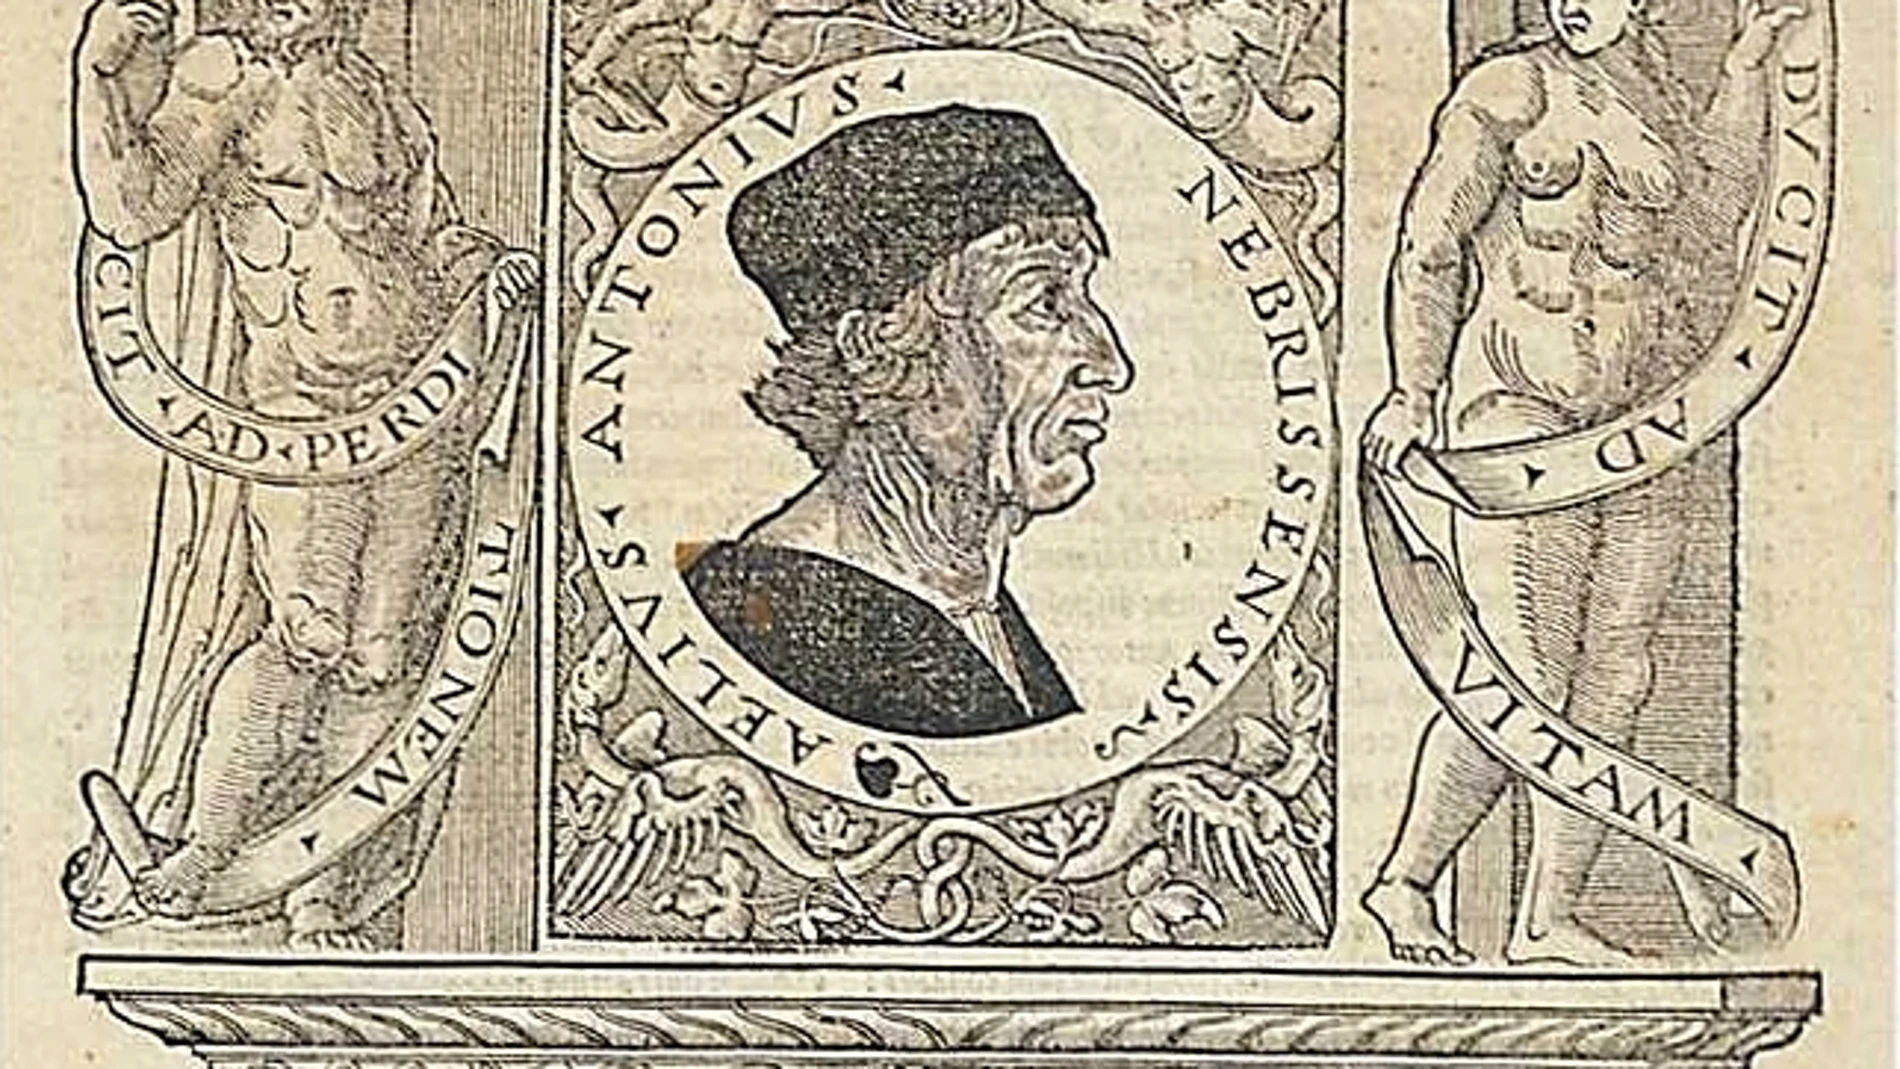 Portada del "Dictionarium" de Antonio de Nebrija de 1536 por sus hijos. La xilografía con su retrato está atribuida a Antonio Ramiro